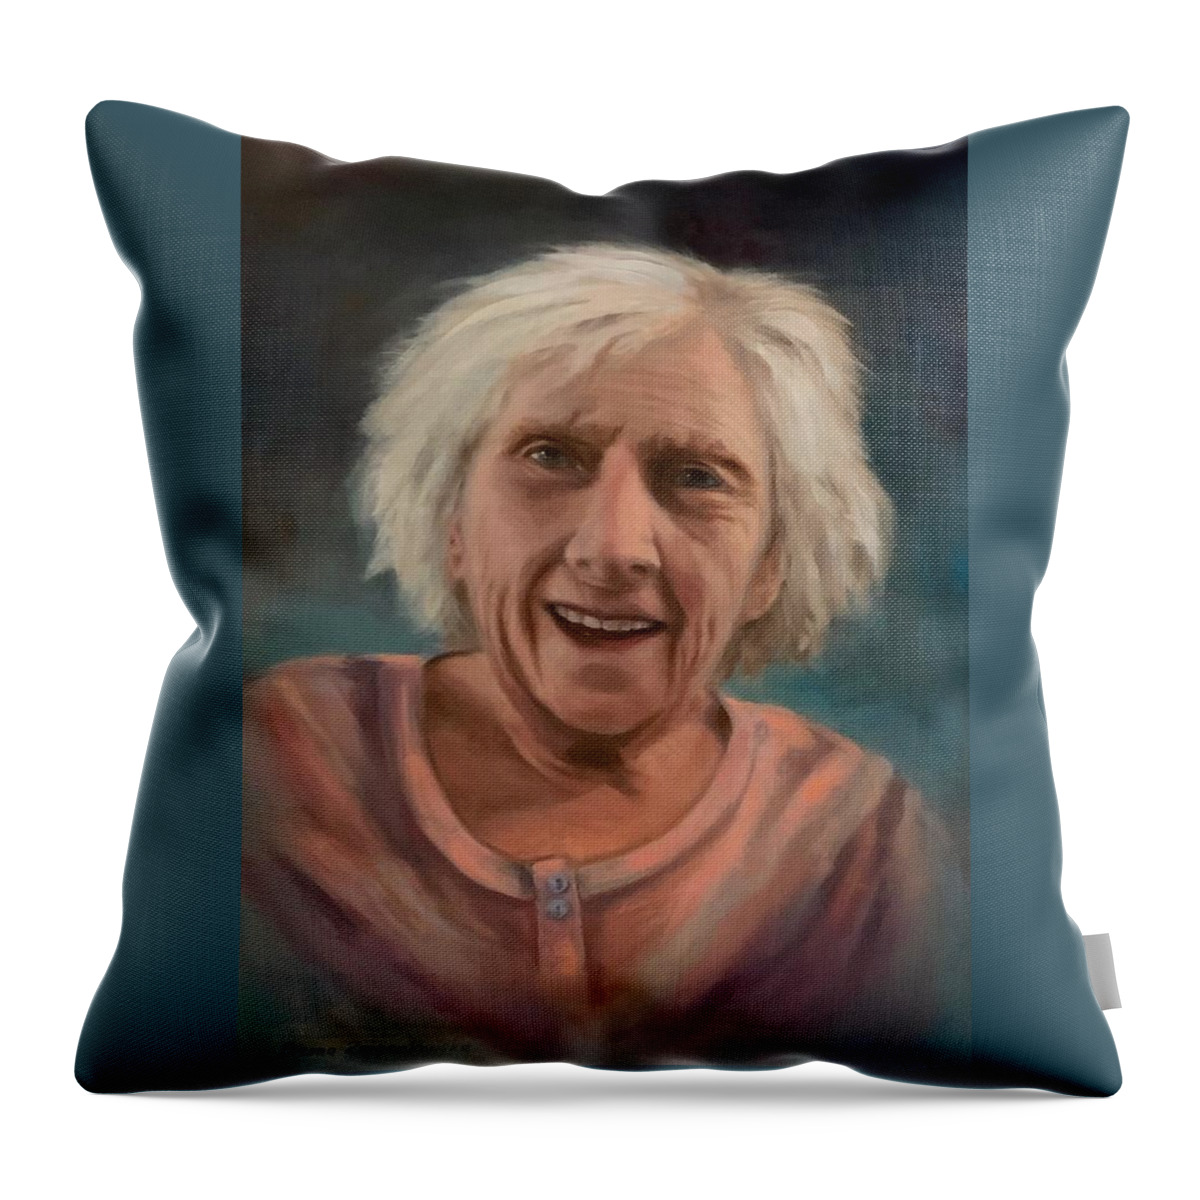 Portrait Throw Pillow featuring the painting Portrait of Verna by Bozena Zajaczkowska